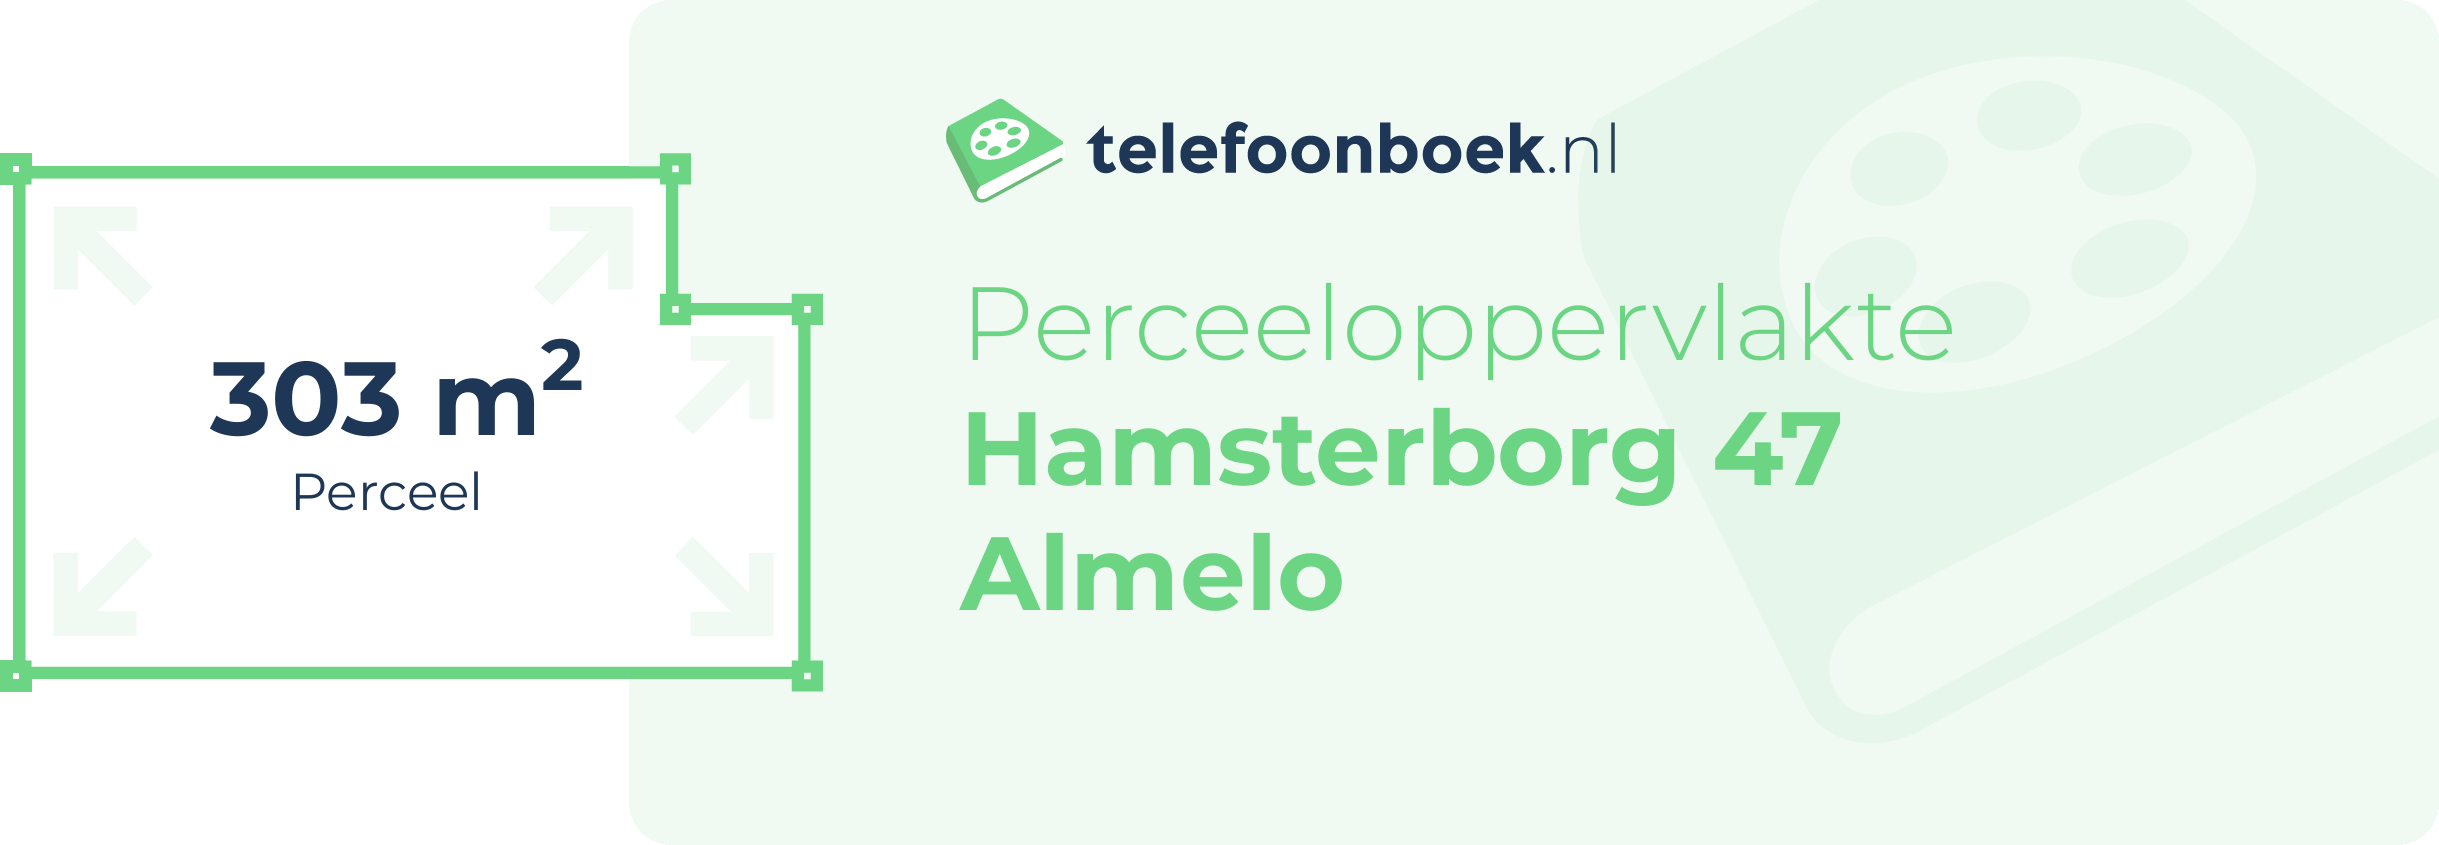 Perceeloppervlakte Hamsterborg 47 Almelo